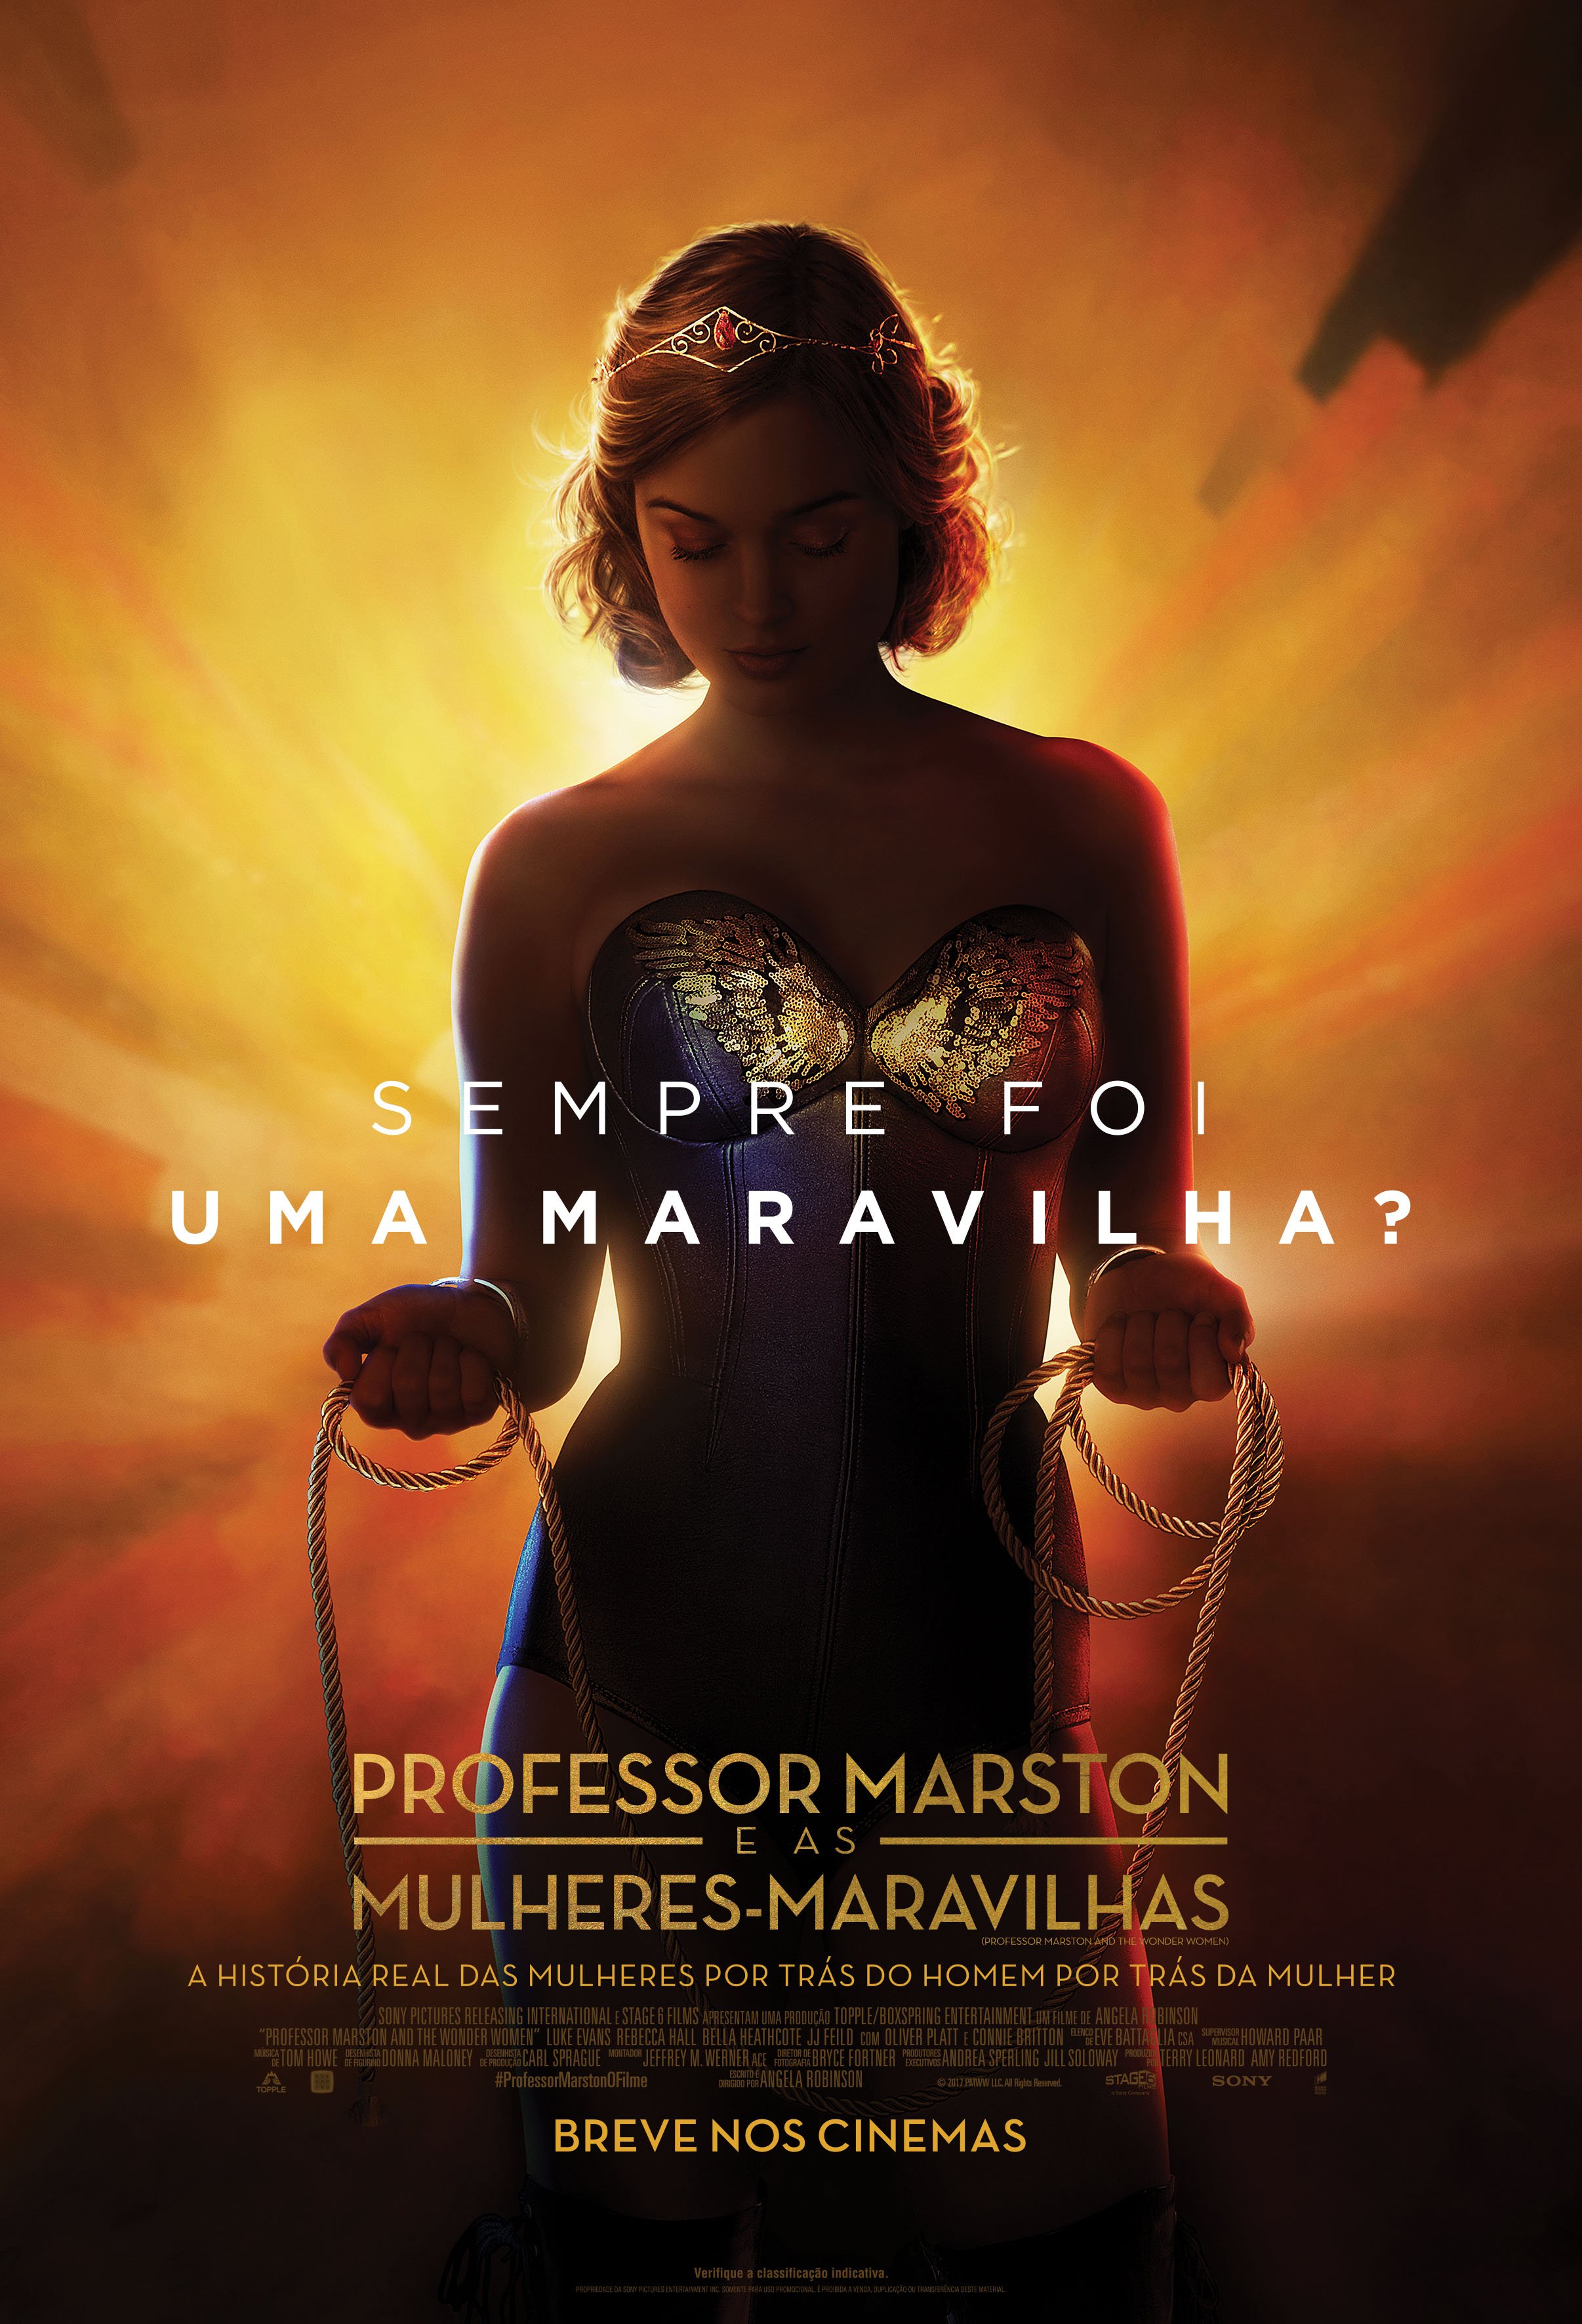 Professor Marston e as Mulheres-Maravilhas - Filme 2017